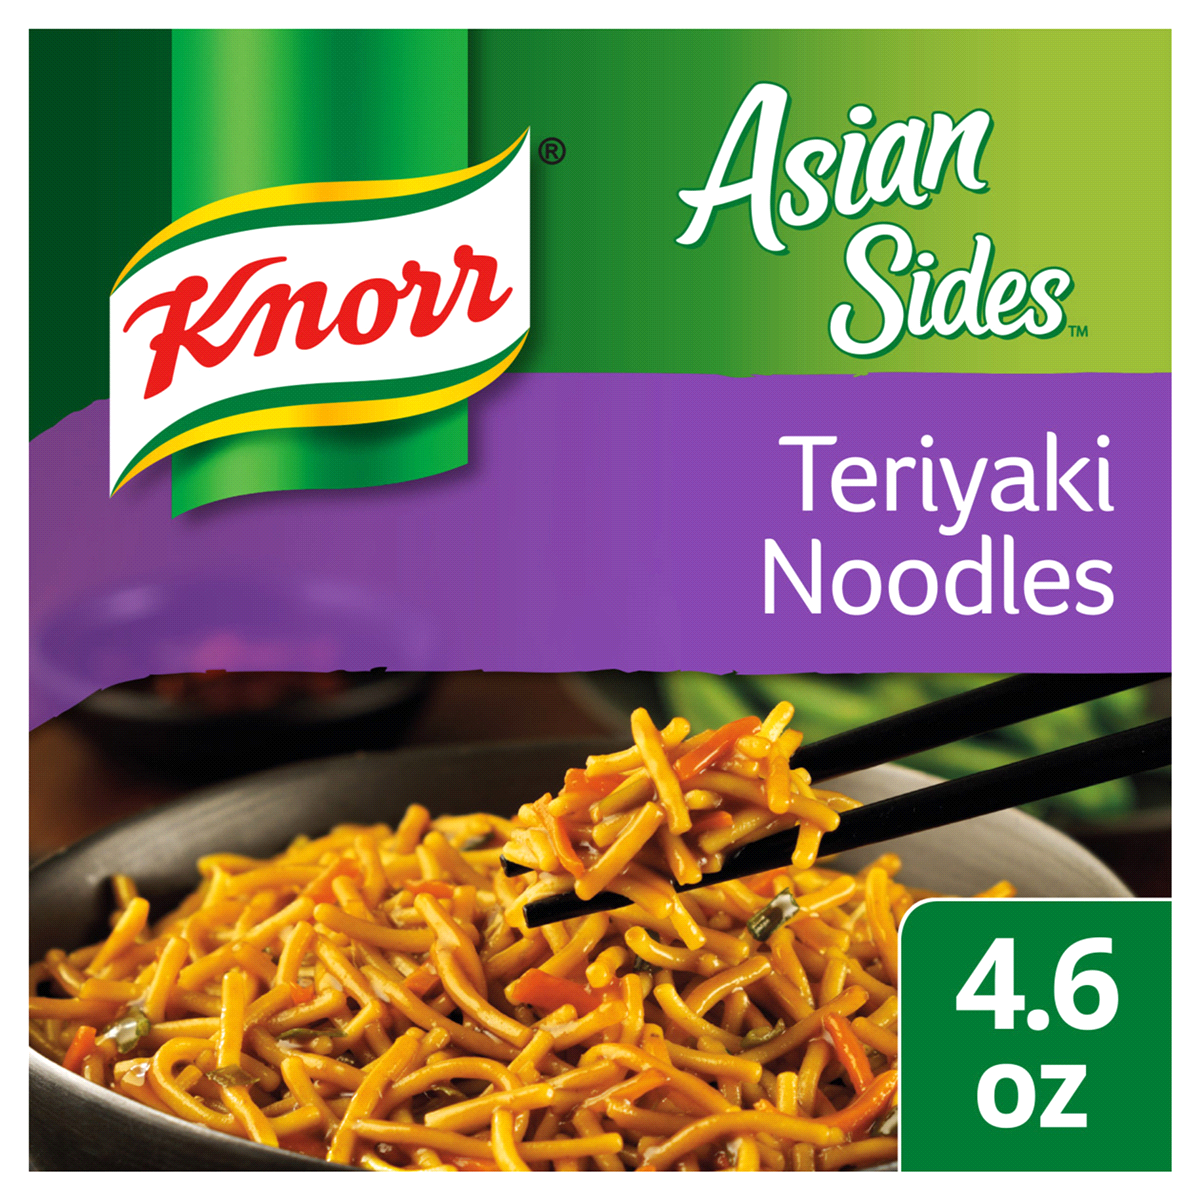 slide 1 of 5, Knorr Asian Sides Teriyaki Noodles, 4.6 oz